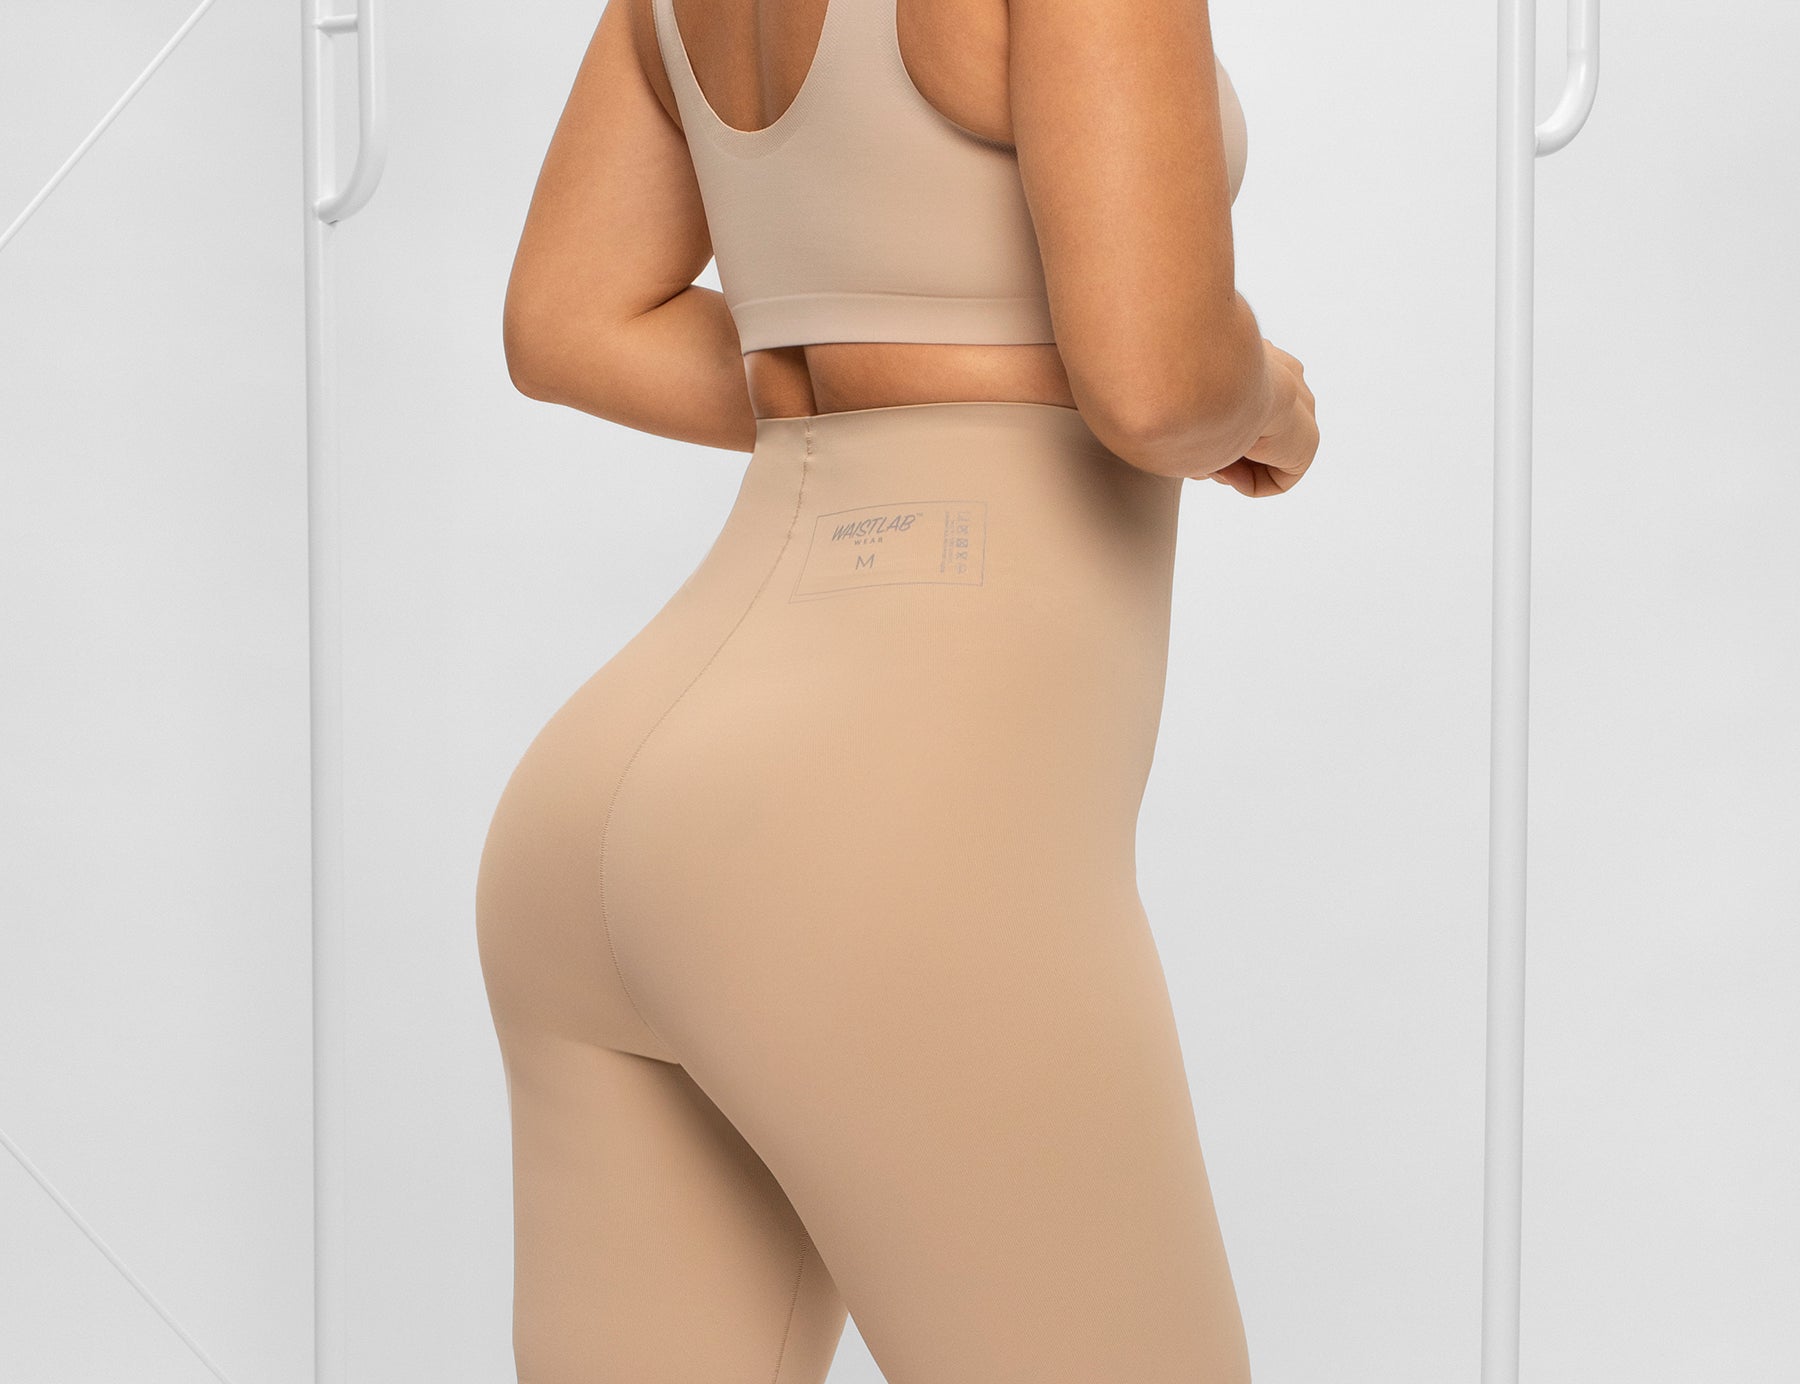 Misthin feminino corpo shaper emagrecimento espartilho wasit trainer duplo  cinto de controle calcinha cinta shorts colombiano